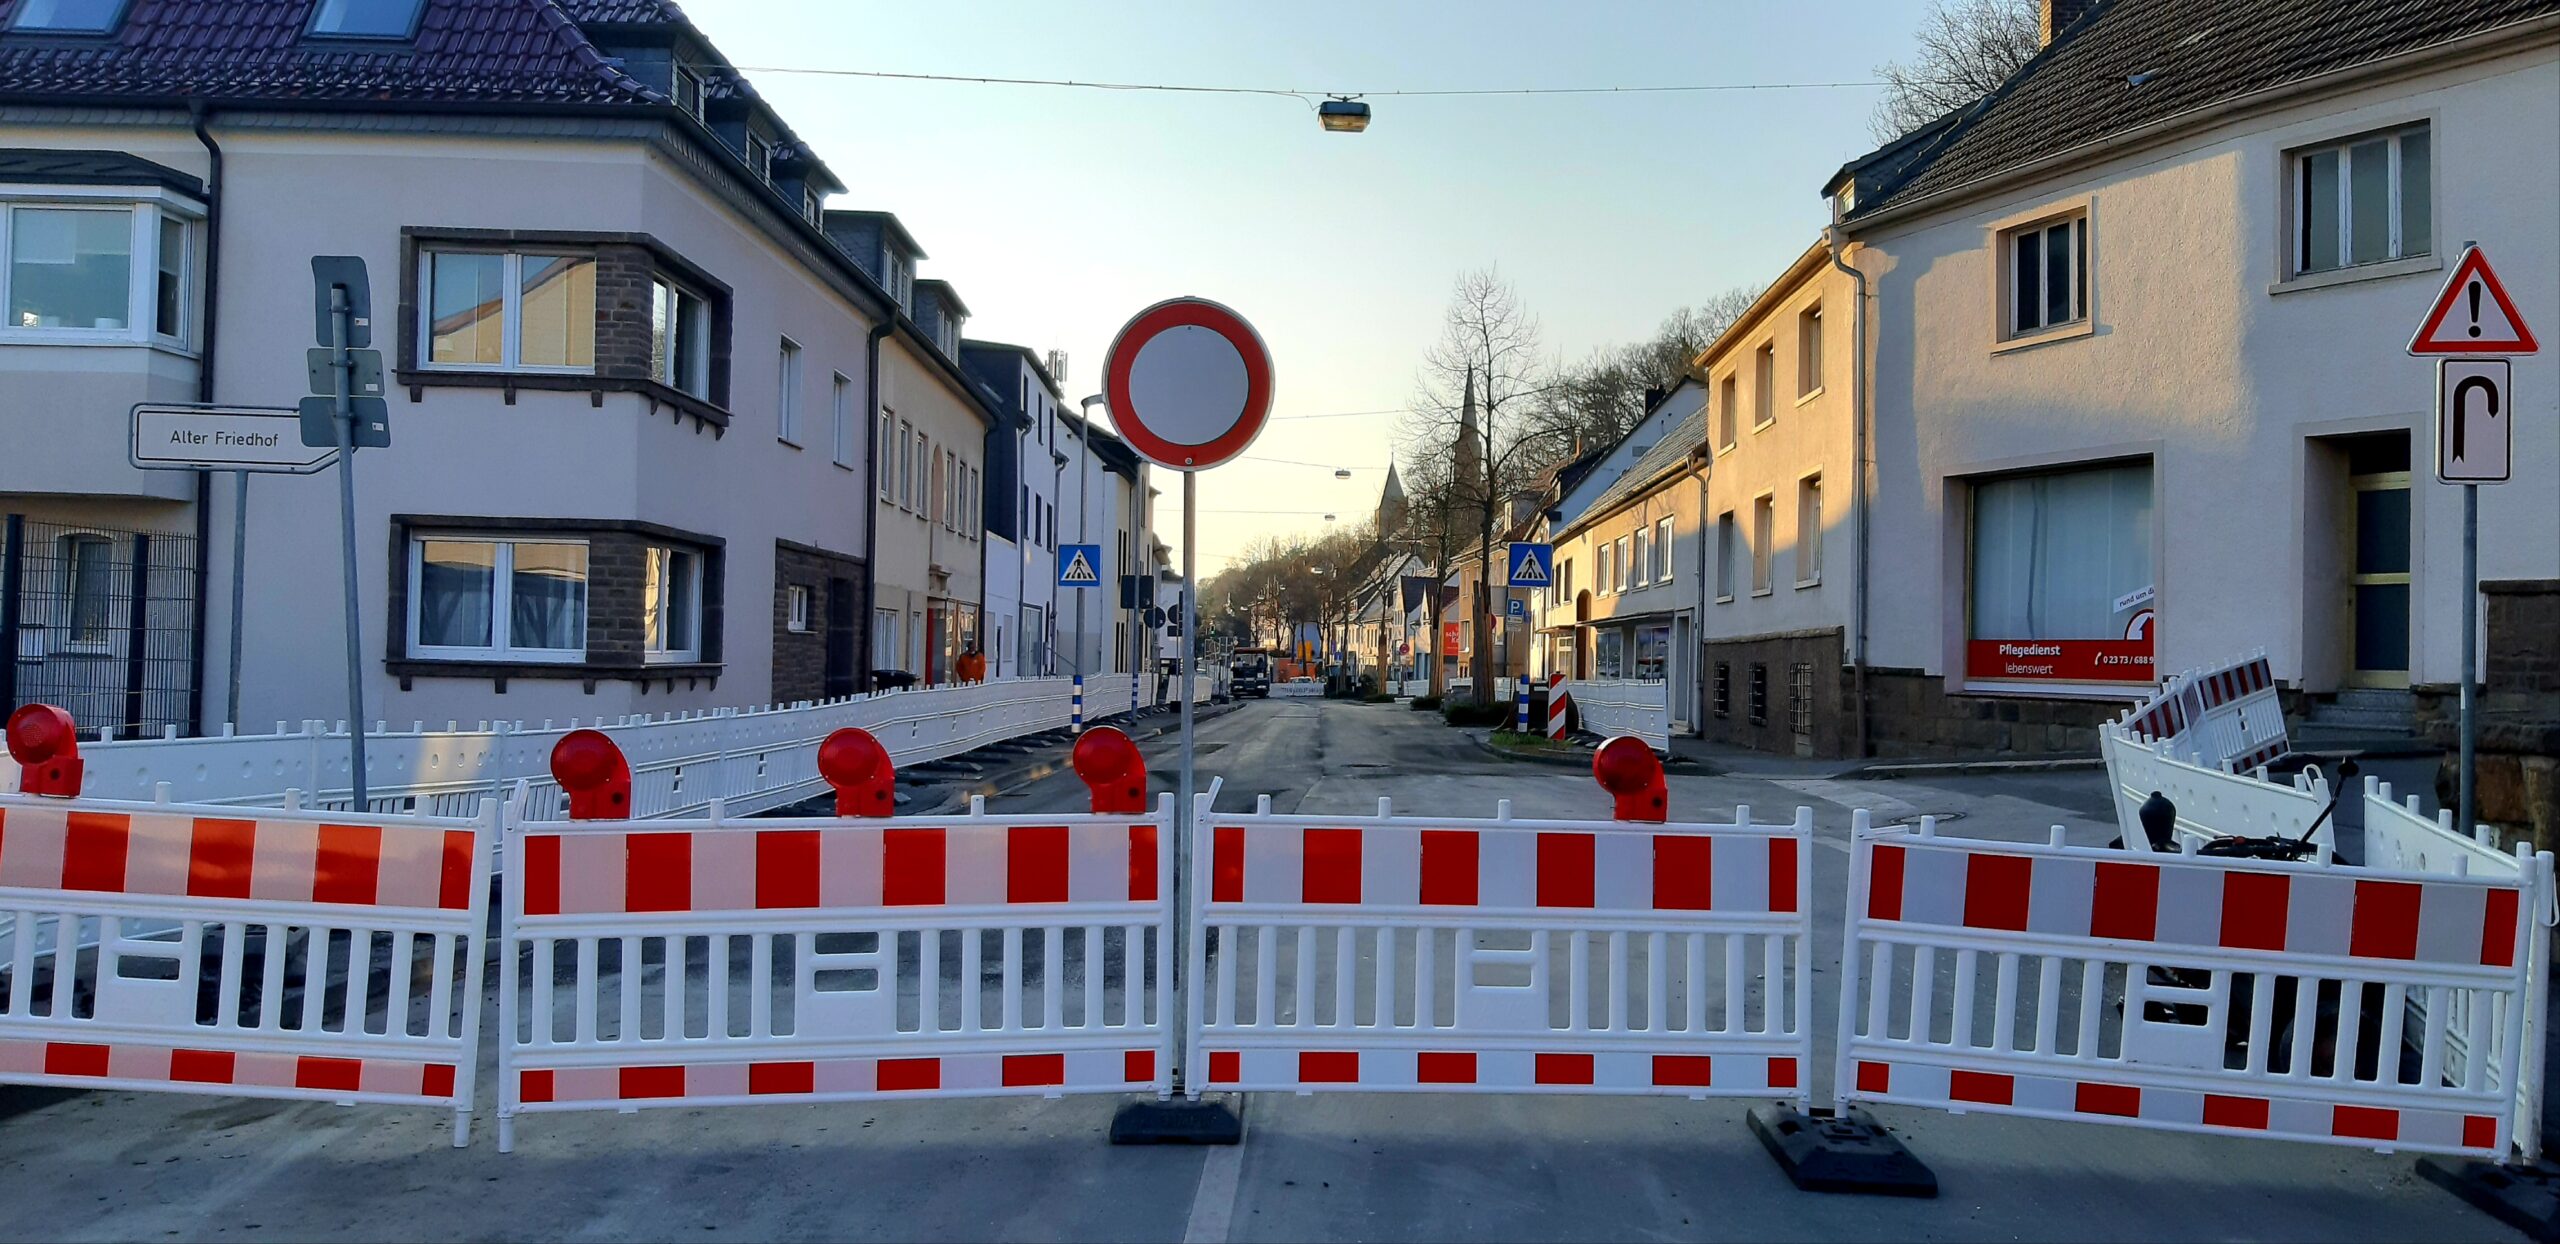 Alleestraße in Fröndenberg (doch) noch nicht wieder frei